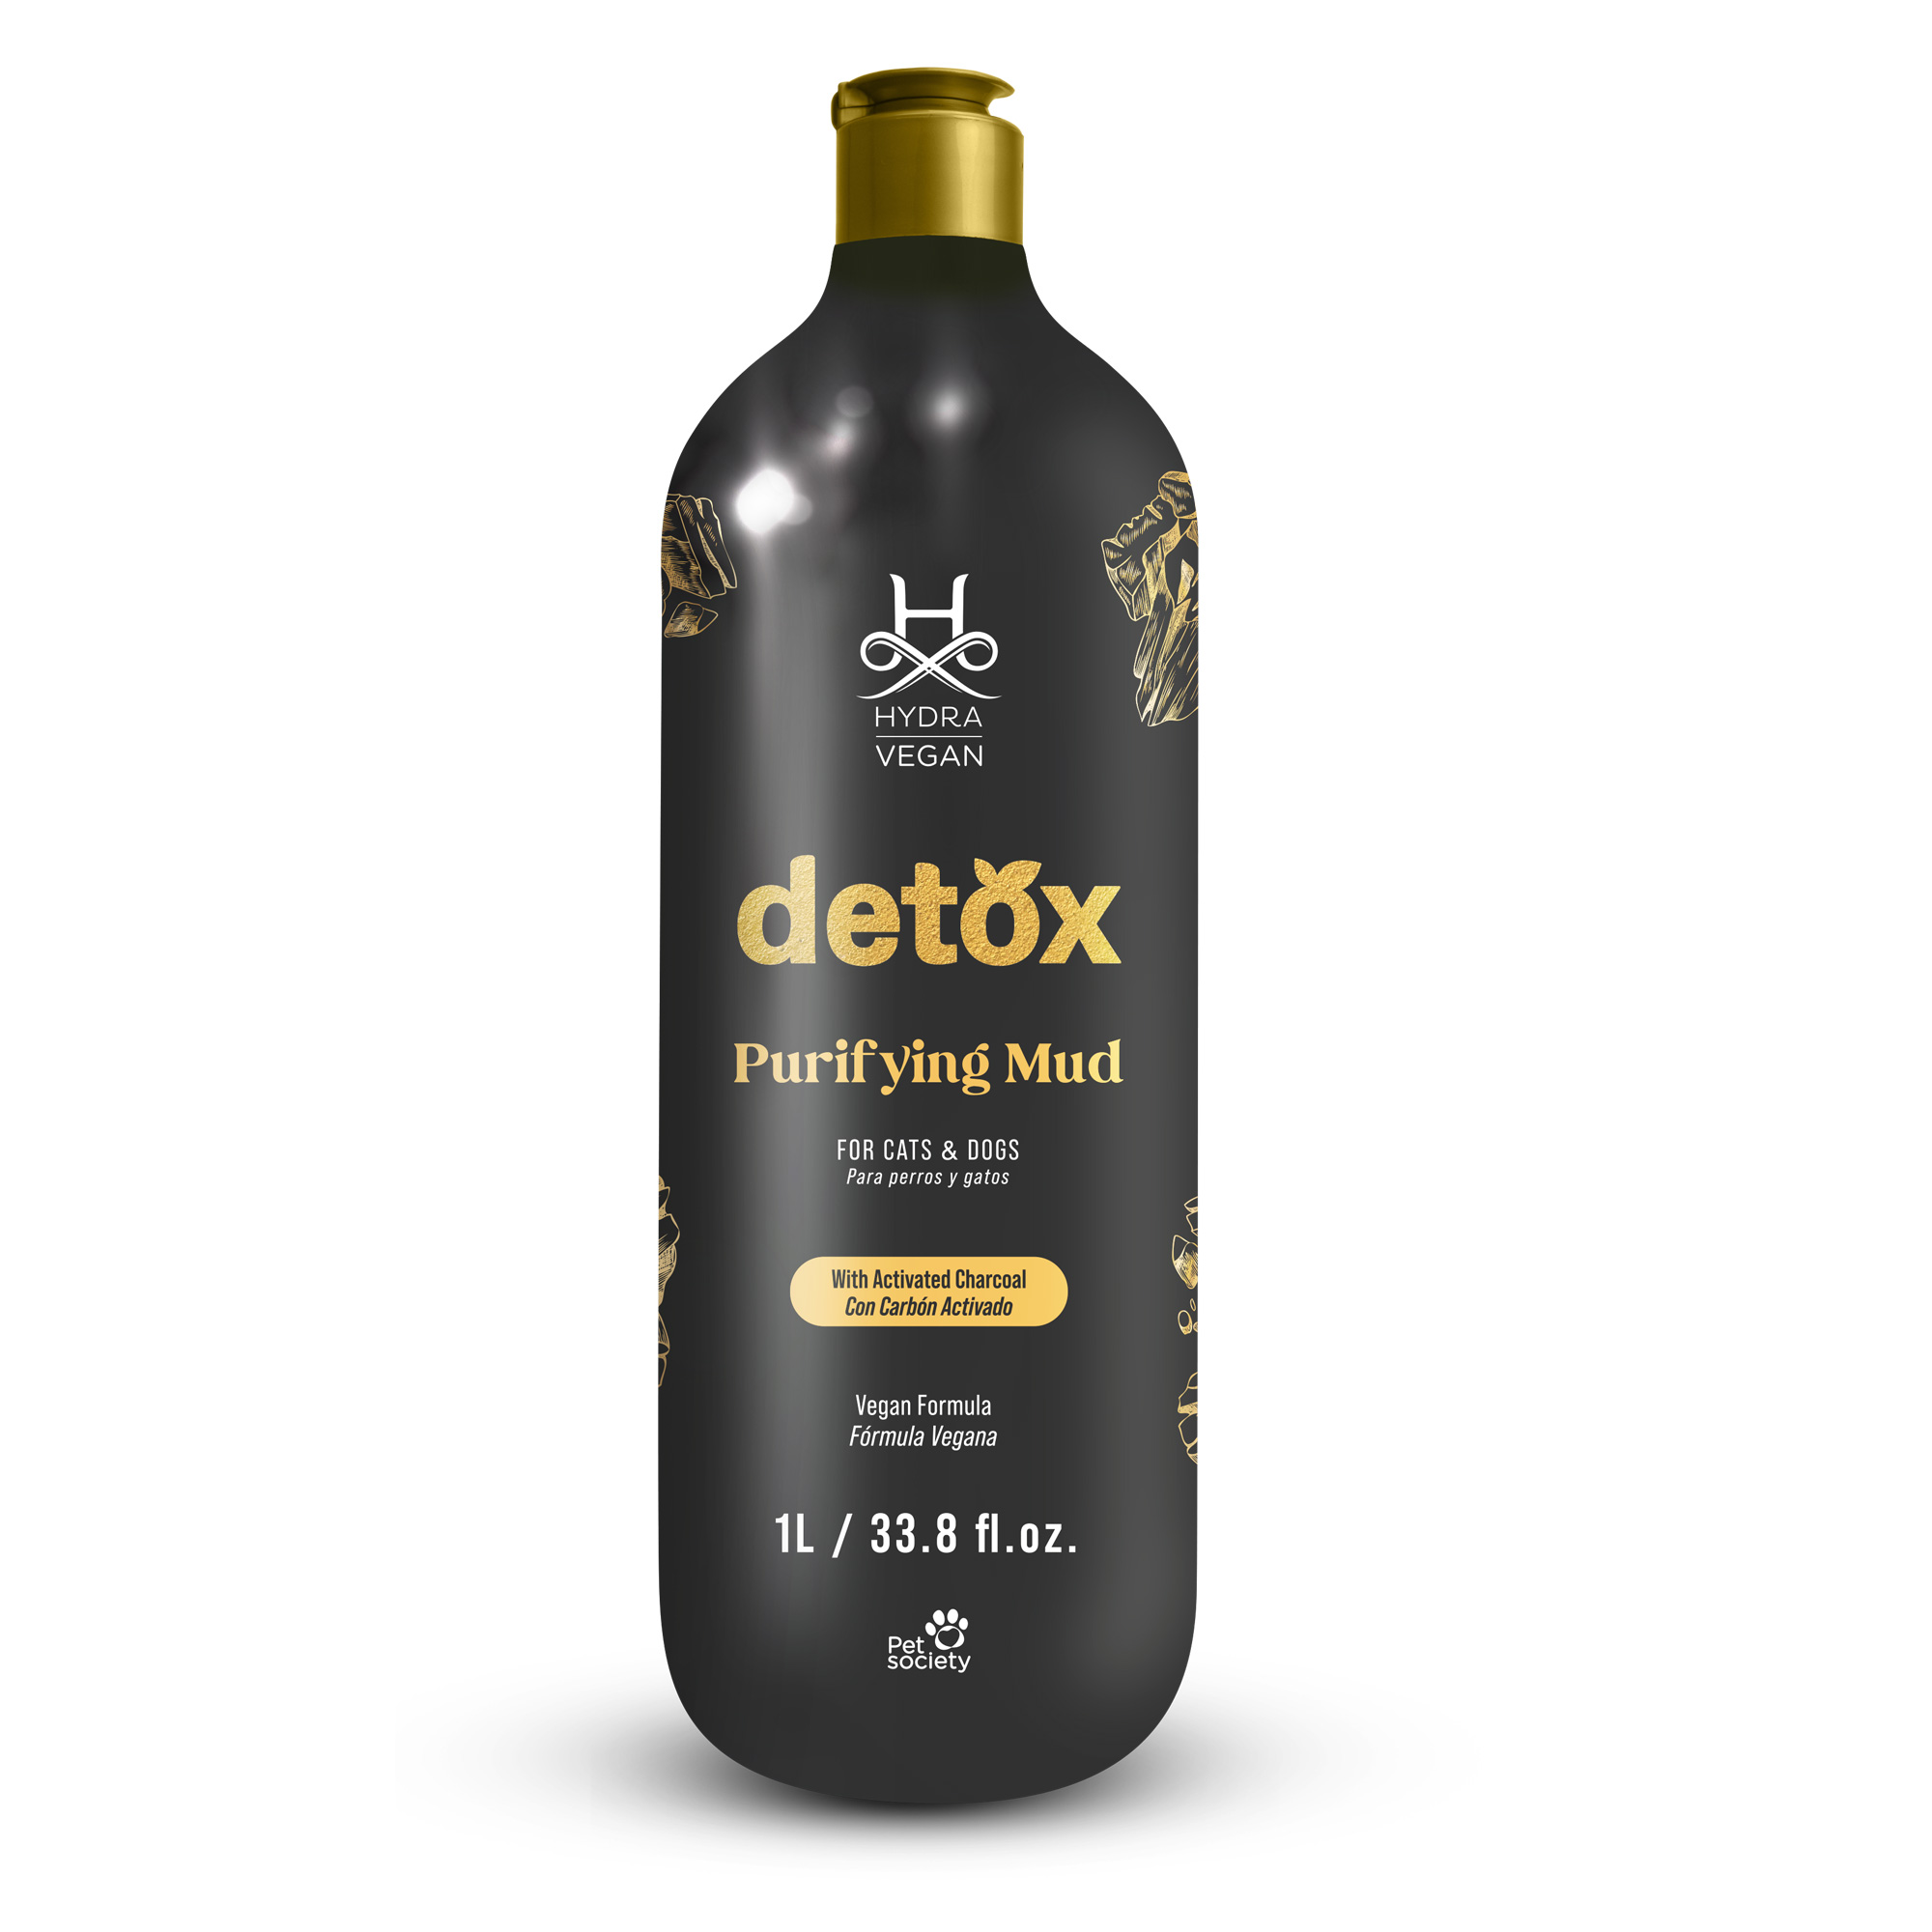 hydra vegan detox purifying mud 33oz